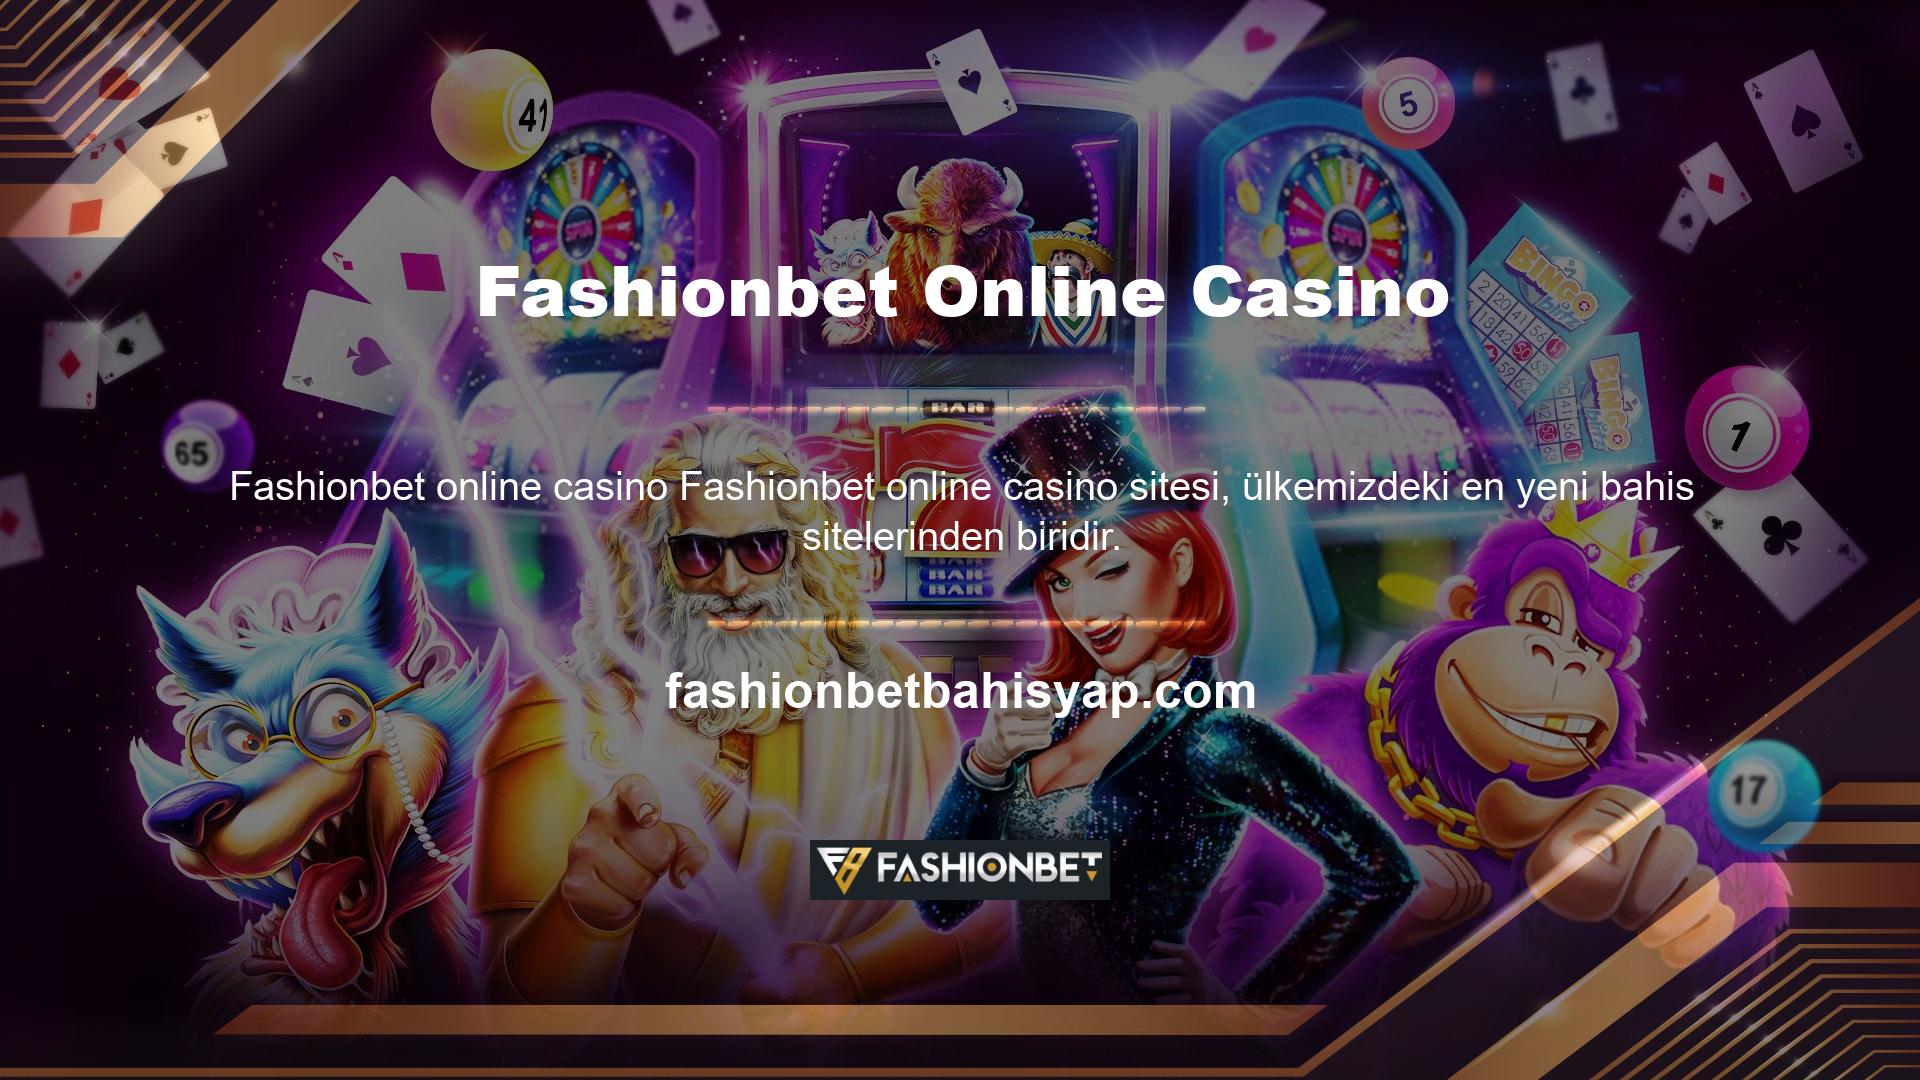 Türkiye, çevrimiçi casino endüstrisinde yenidir, ancak Türkiye çevrimiçi casino sektörünü iyi bilmektedir